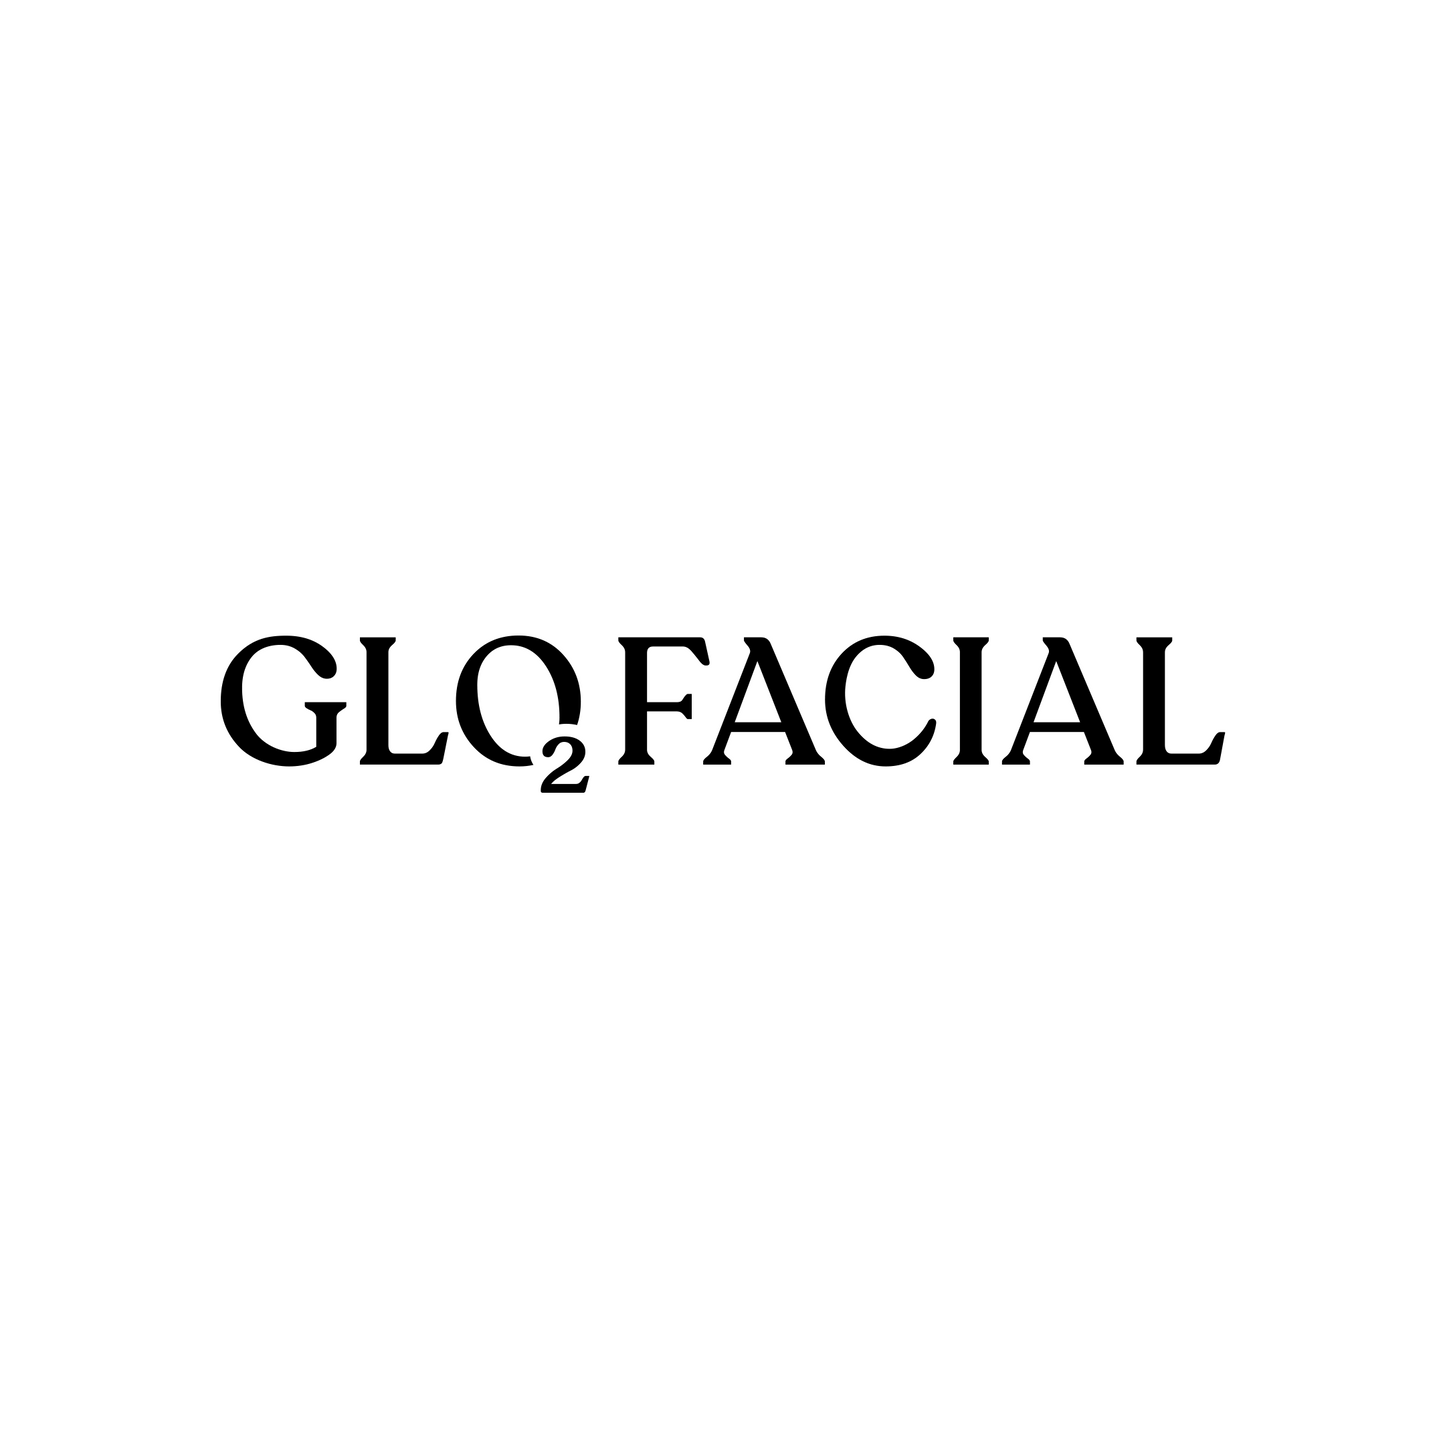 Glo2Facial